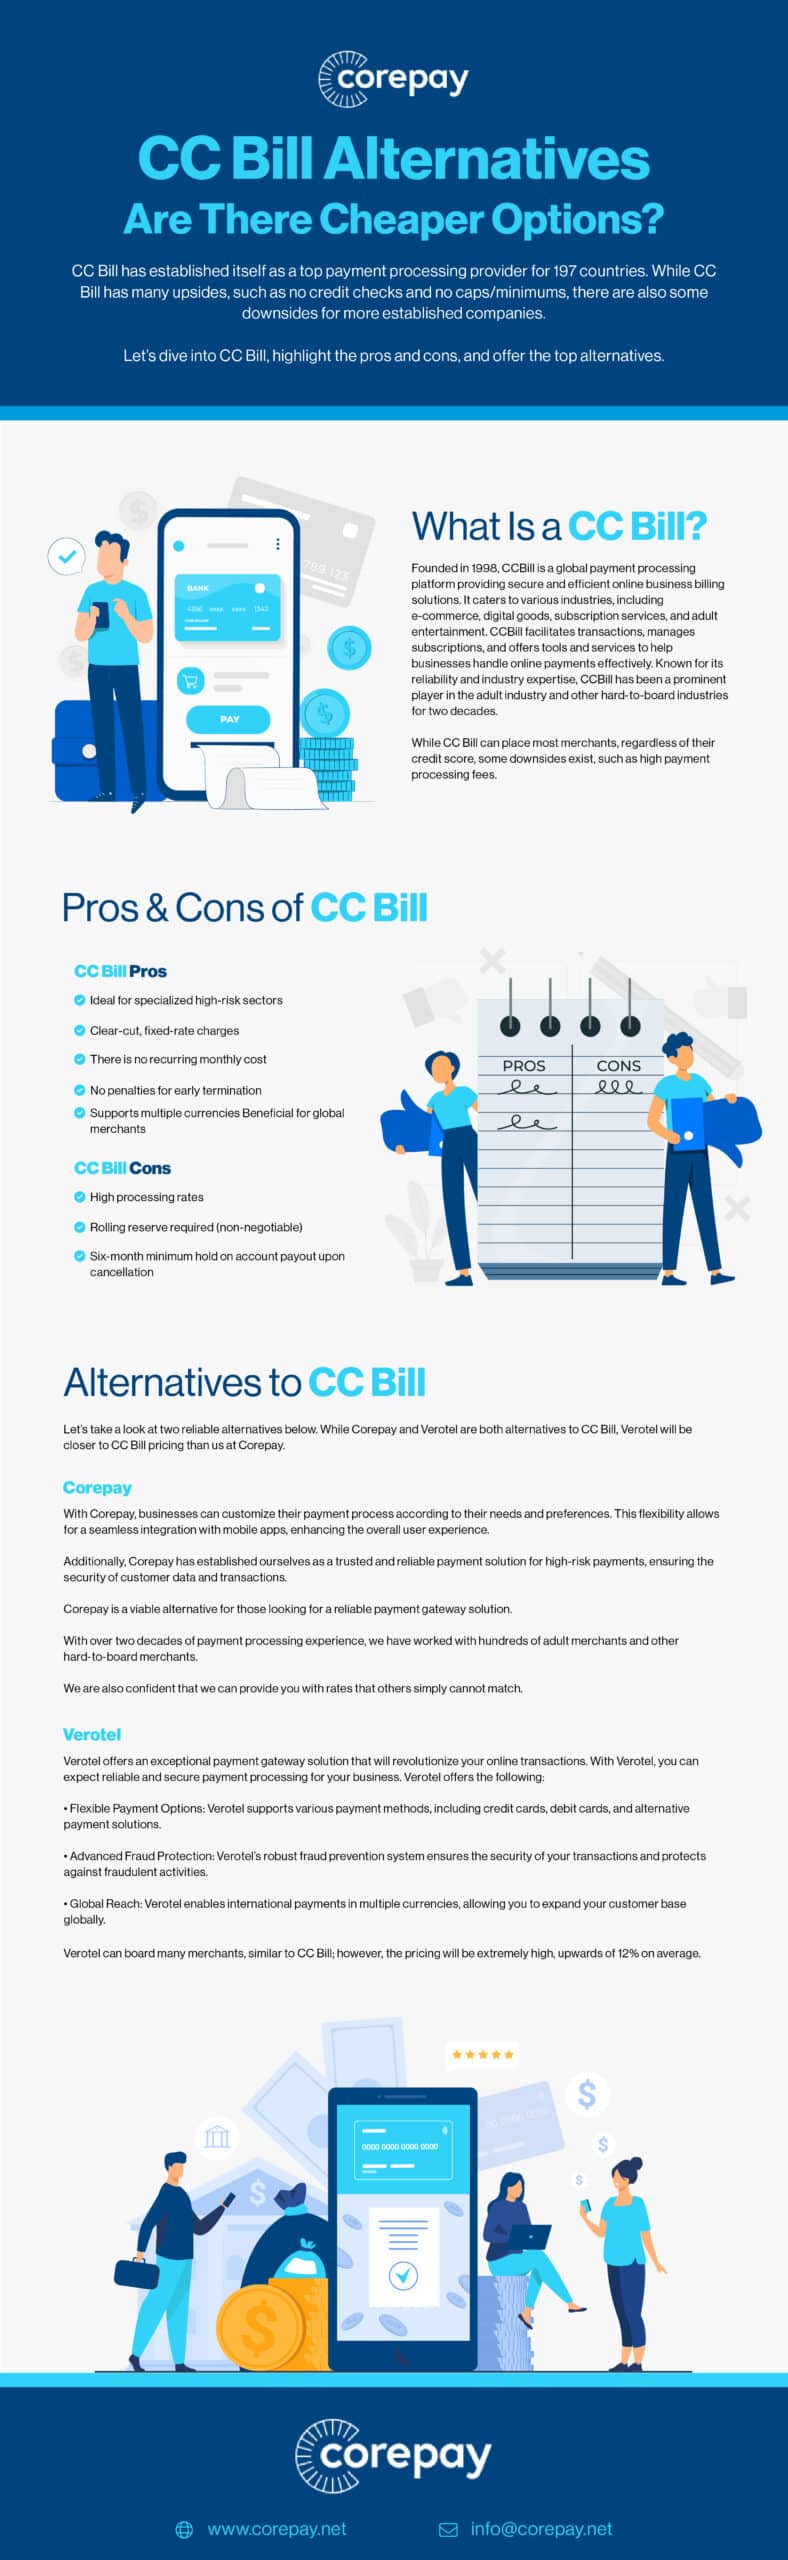 cc bill alternatives